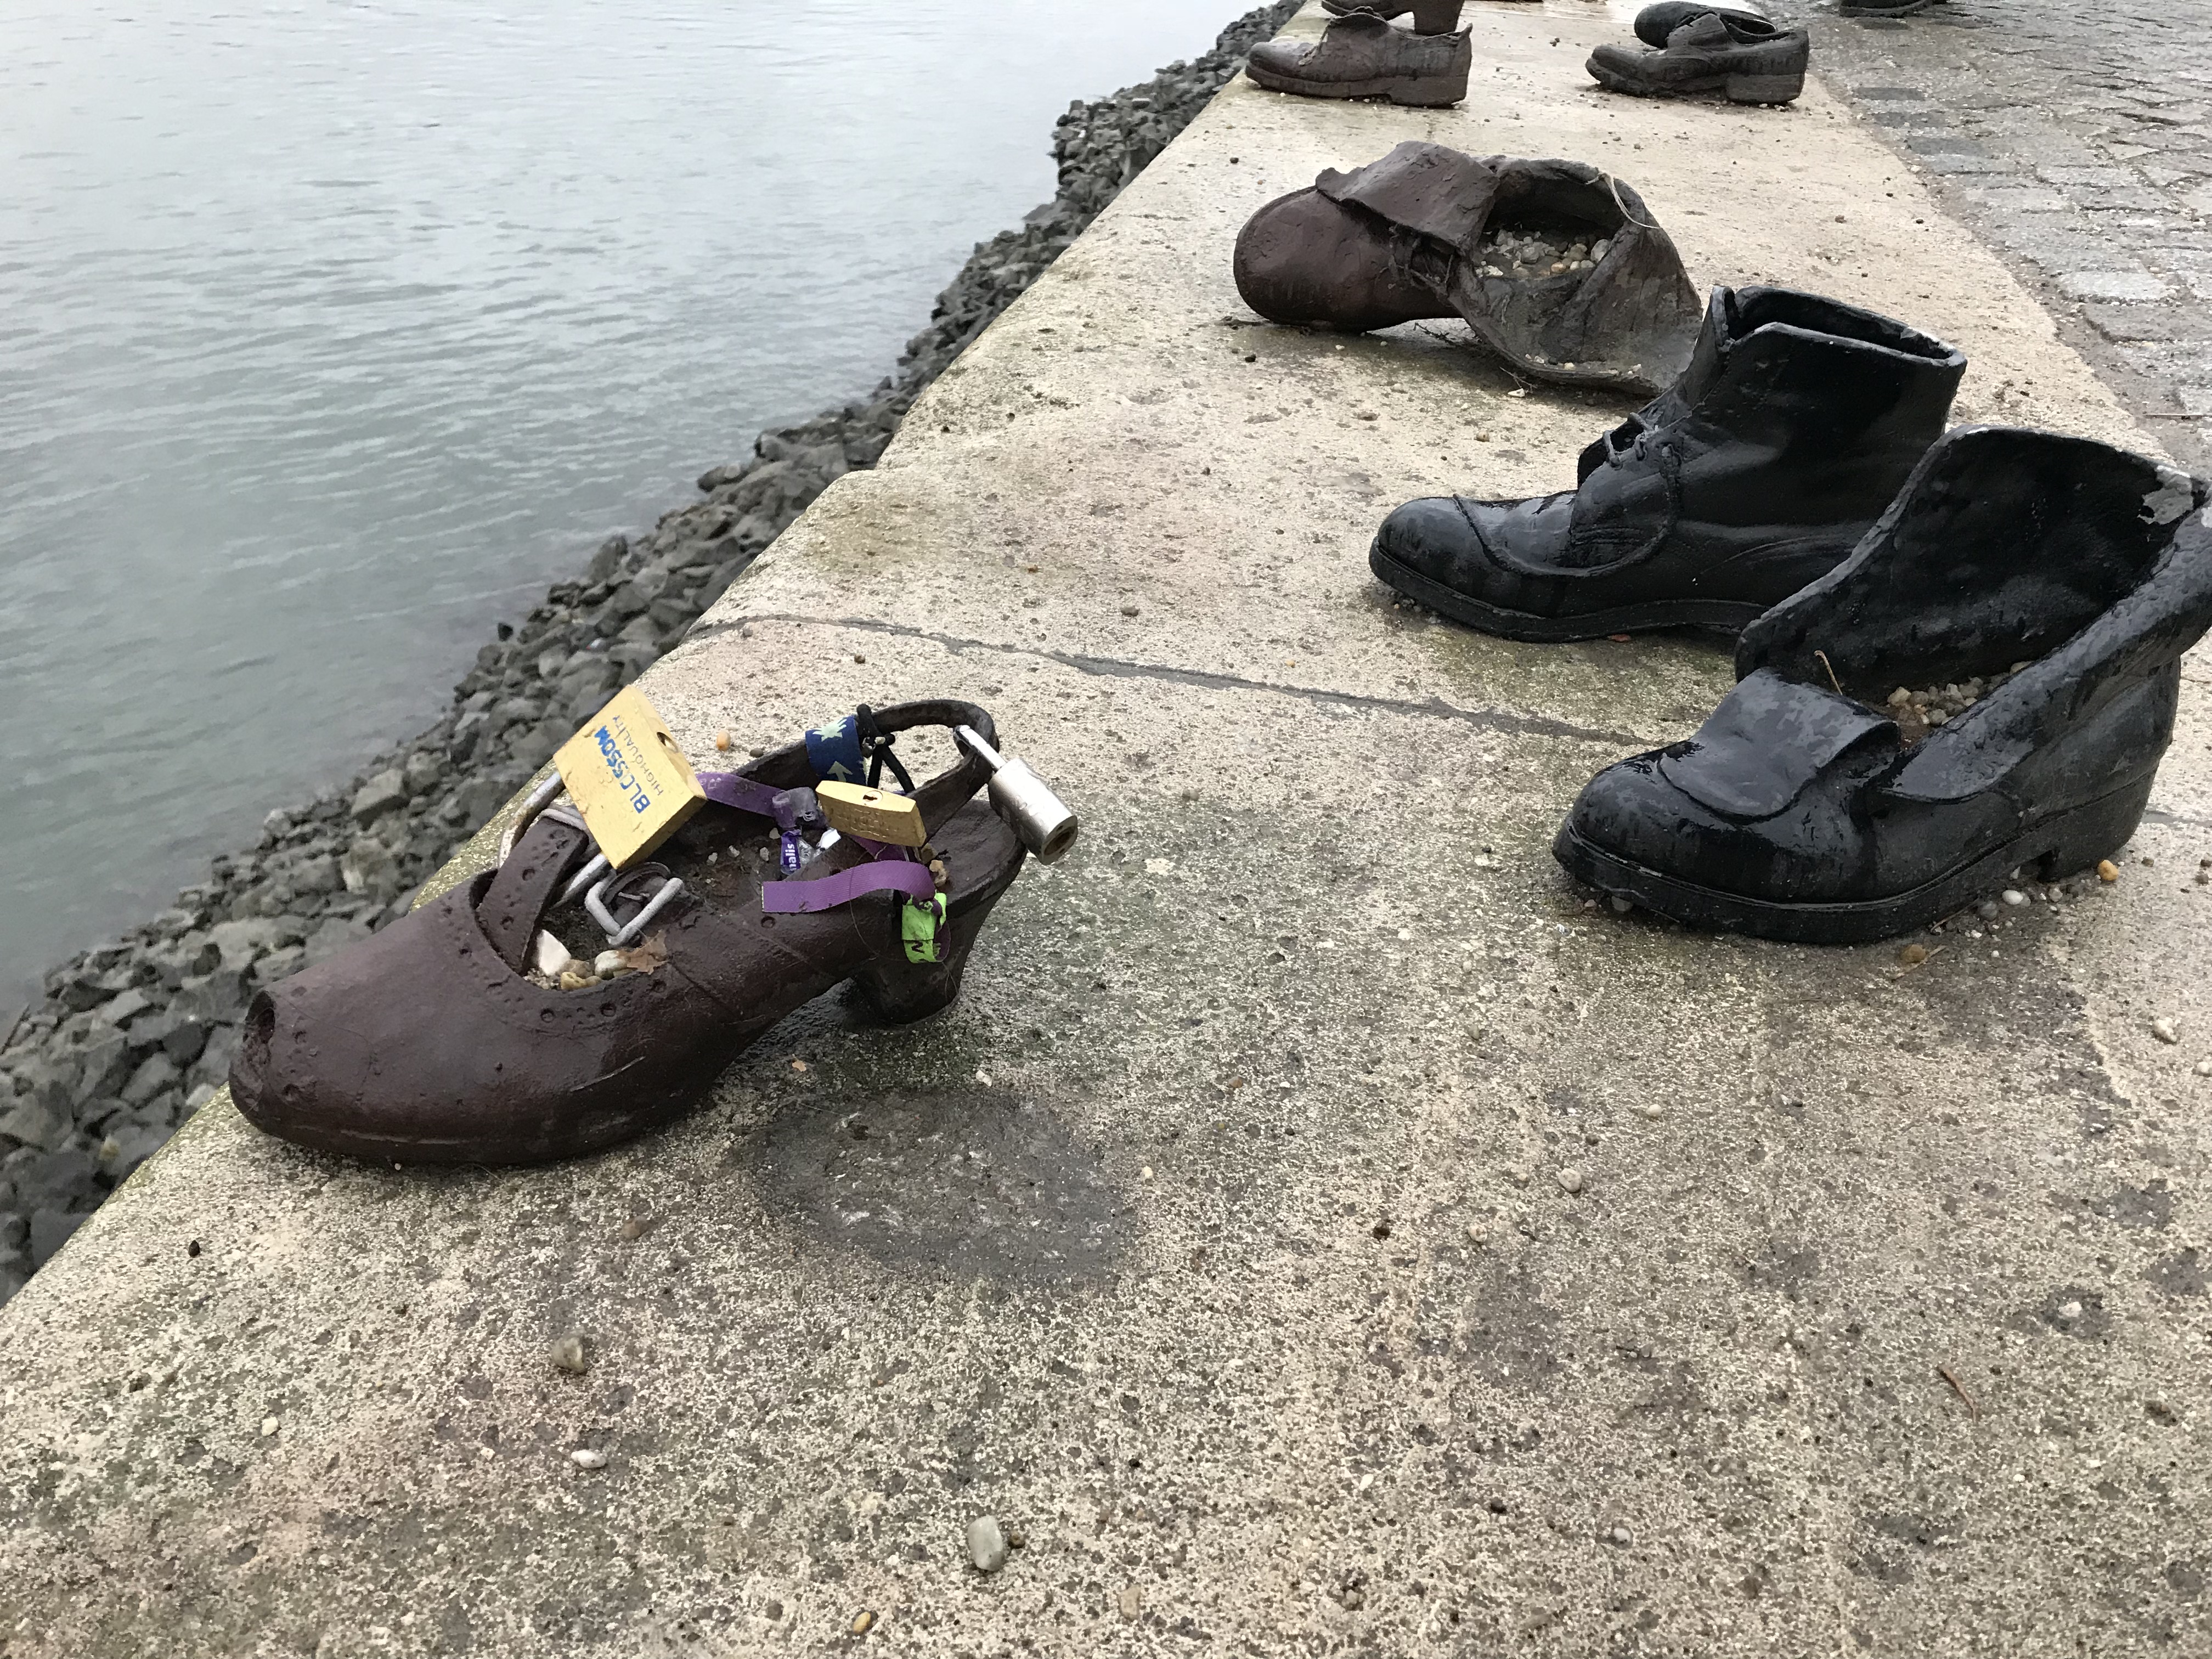 ドナウ川遊歩道の靴